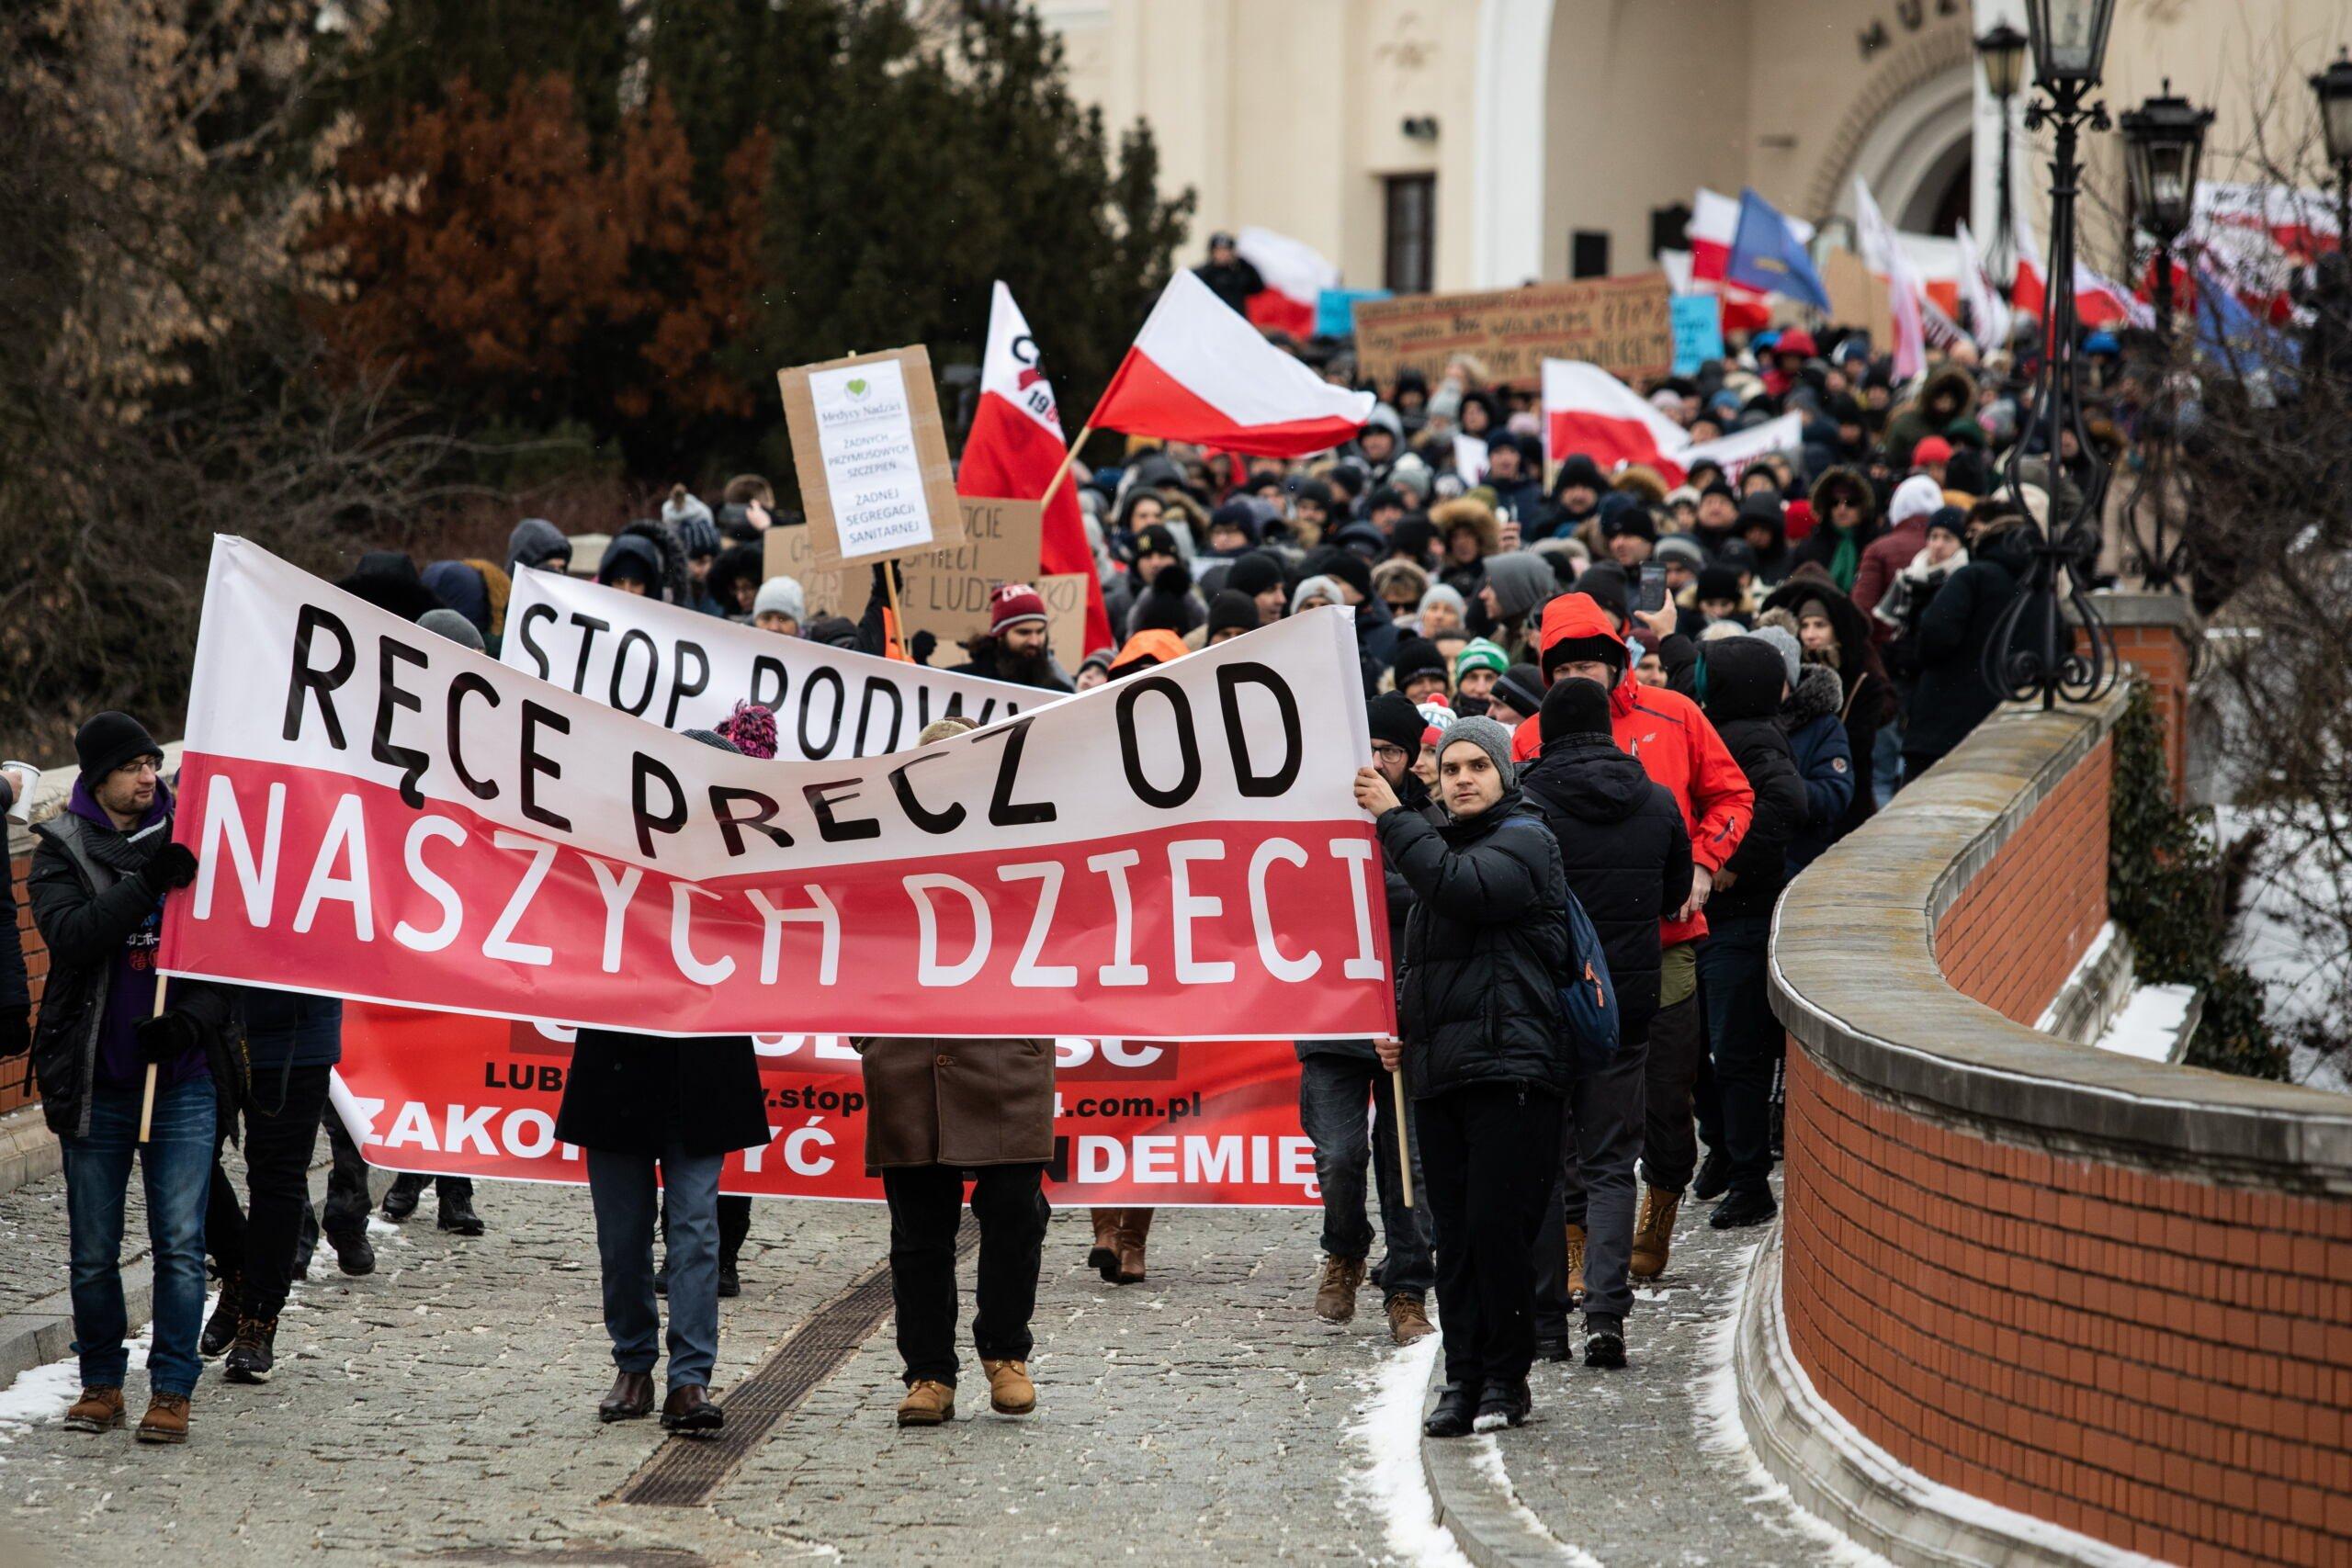 Marsz antyszczepiokowców, idą ulicą w Lublinie z transparentem "Ręce precz od naszych dzieci"